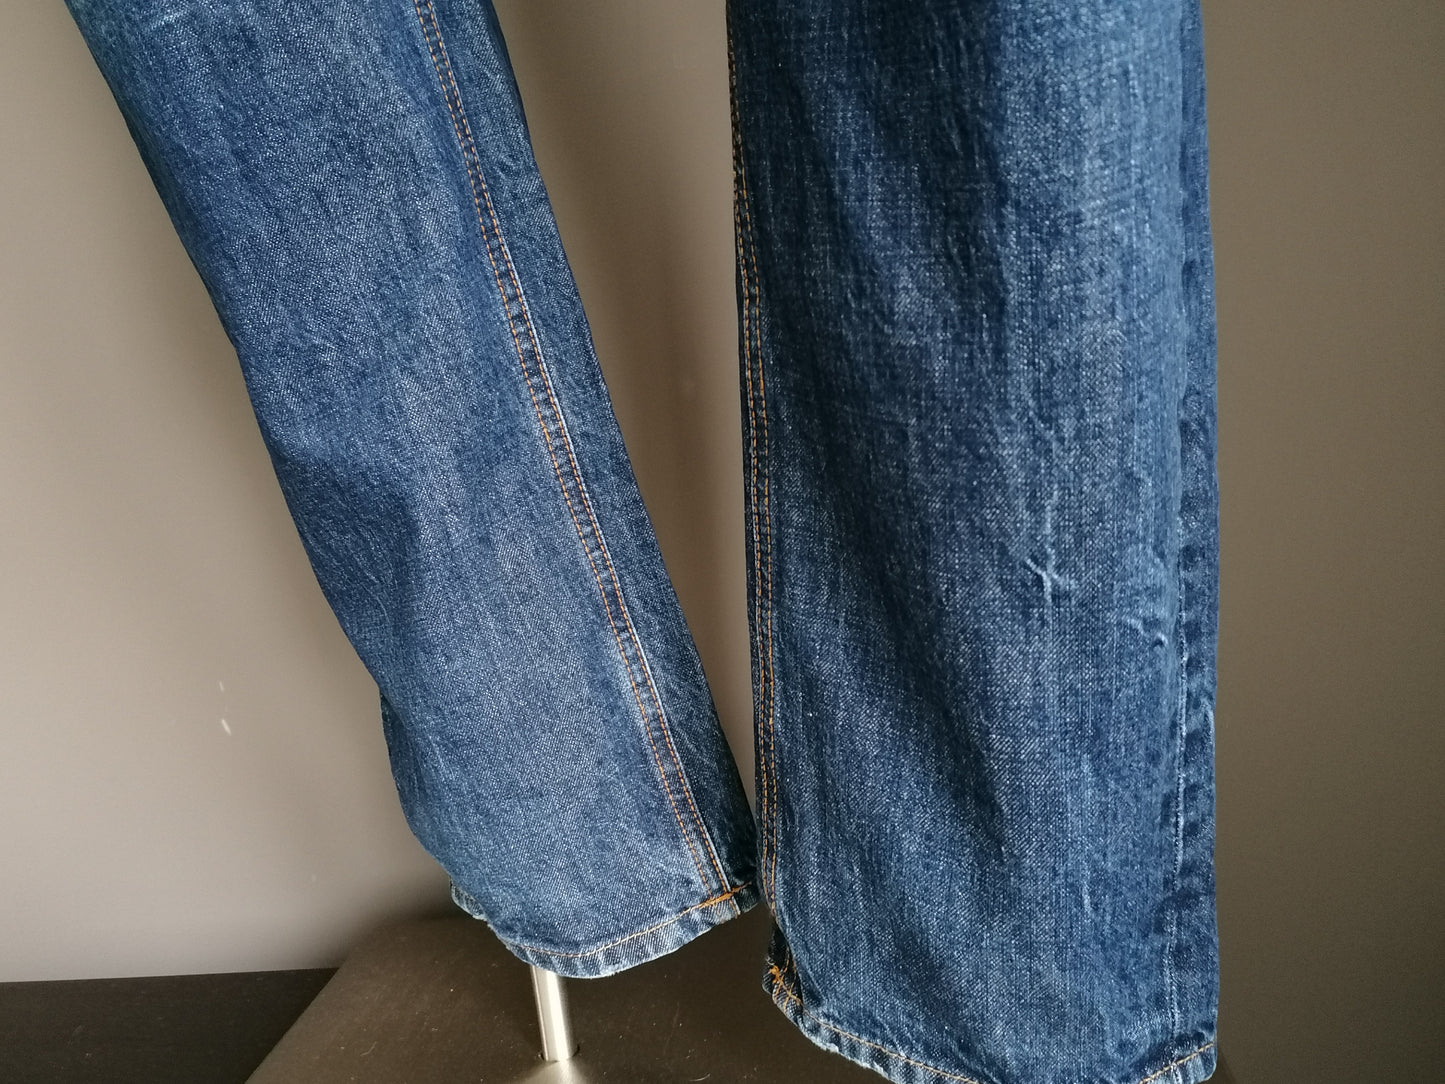 Jeans di Silvercreek. Blu scuro colorato. Taglia W38 - L34. Tipo di carpentiere